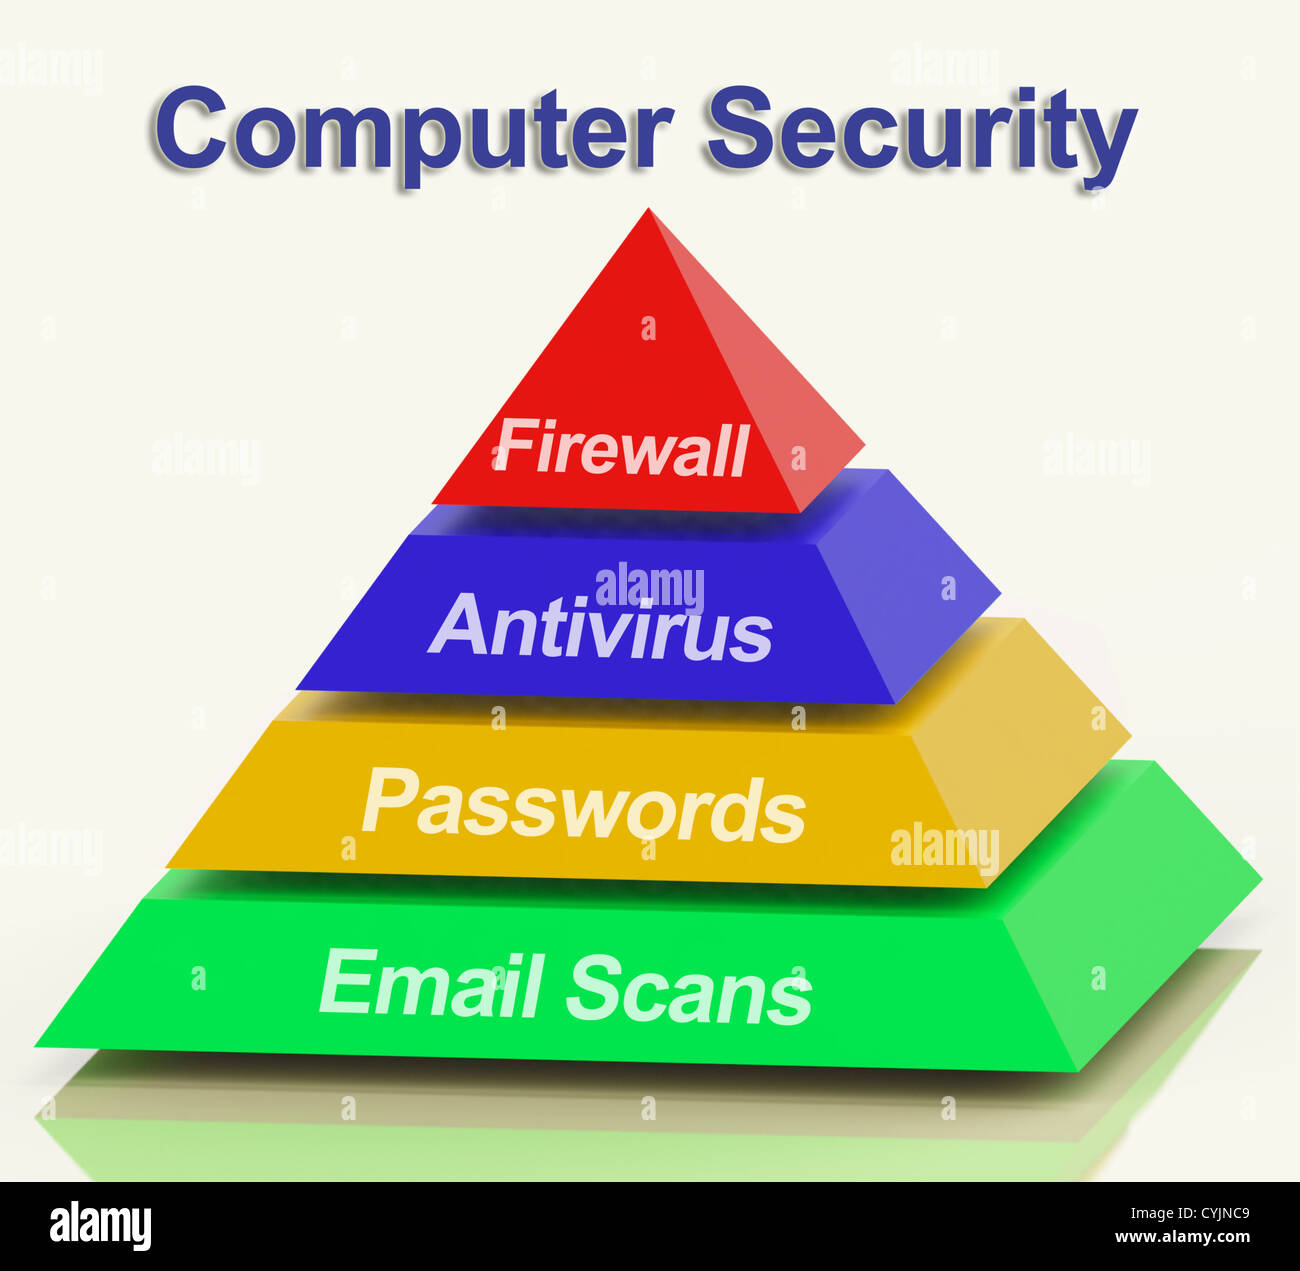 Computer-Pyramide-Diagramm mit Laptop-Internet-Sicherheit Stockfotografie -  Alamy